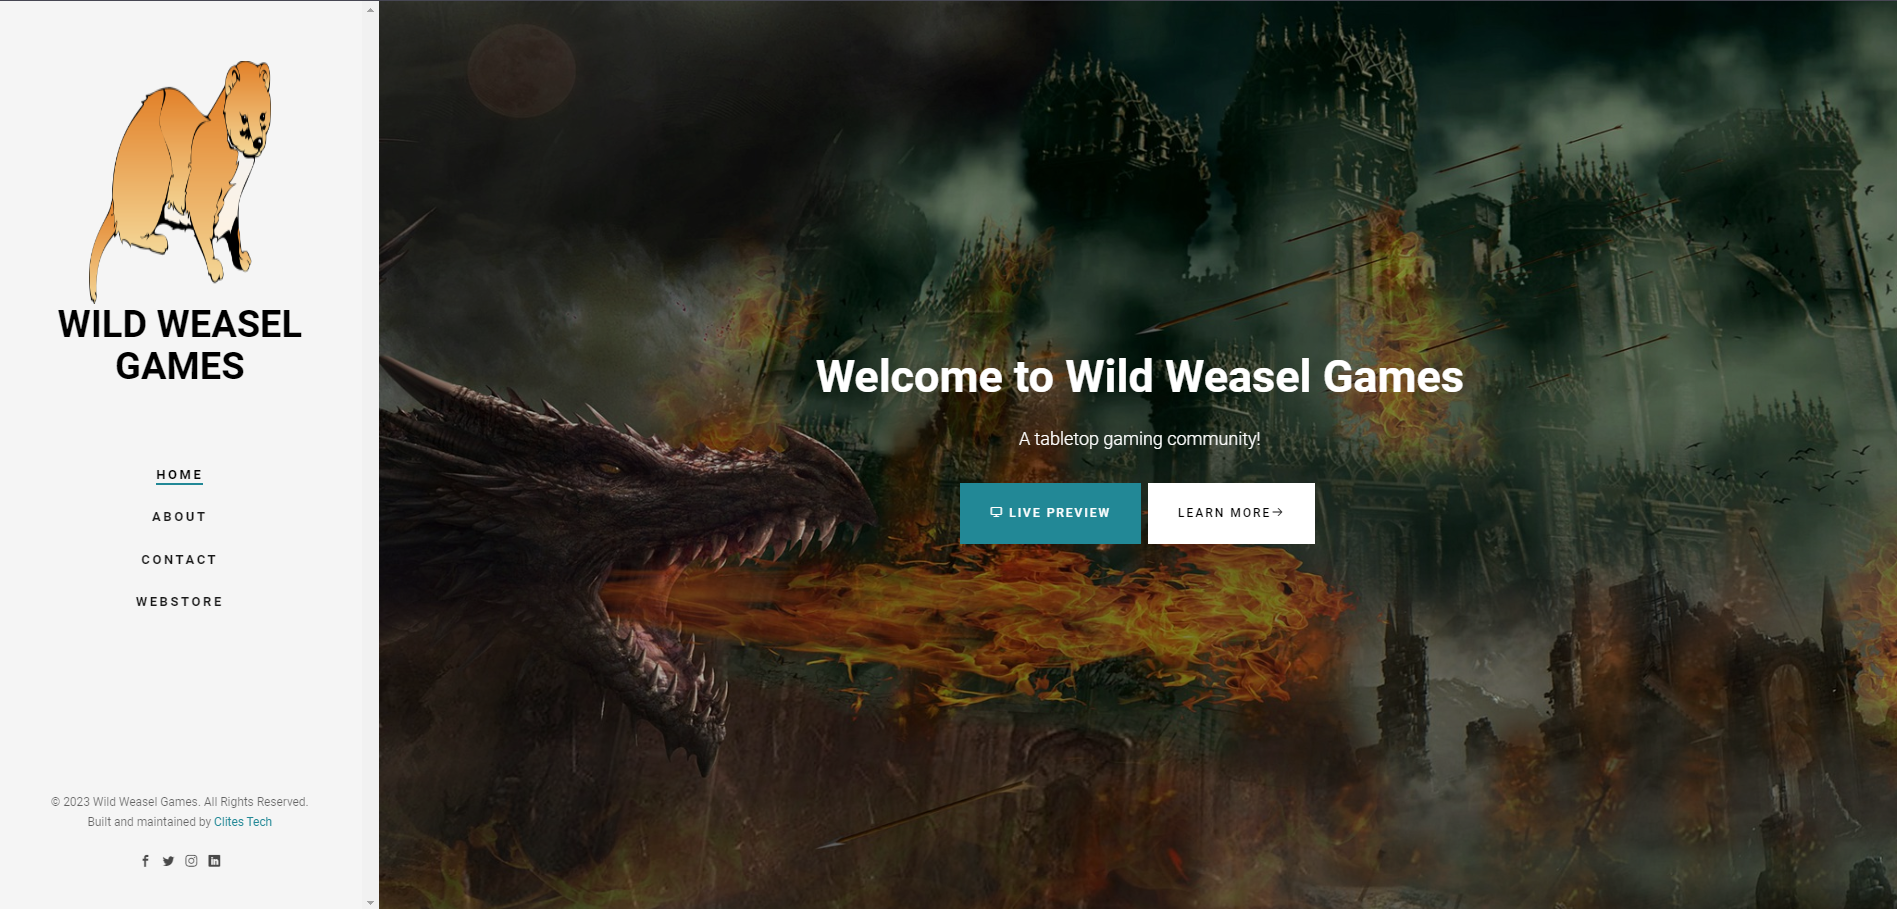 Wild Weasel Games Website Image